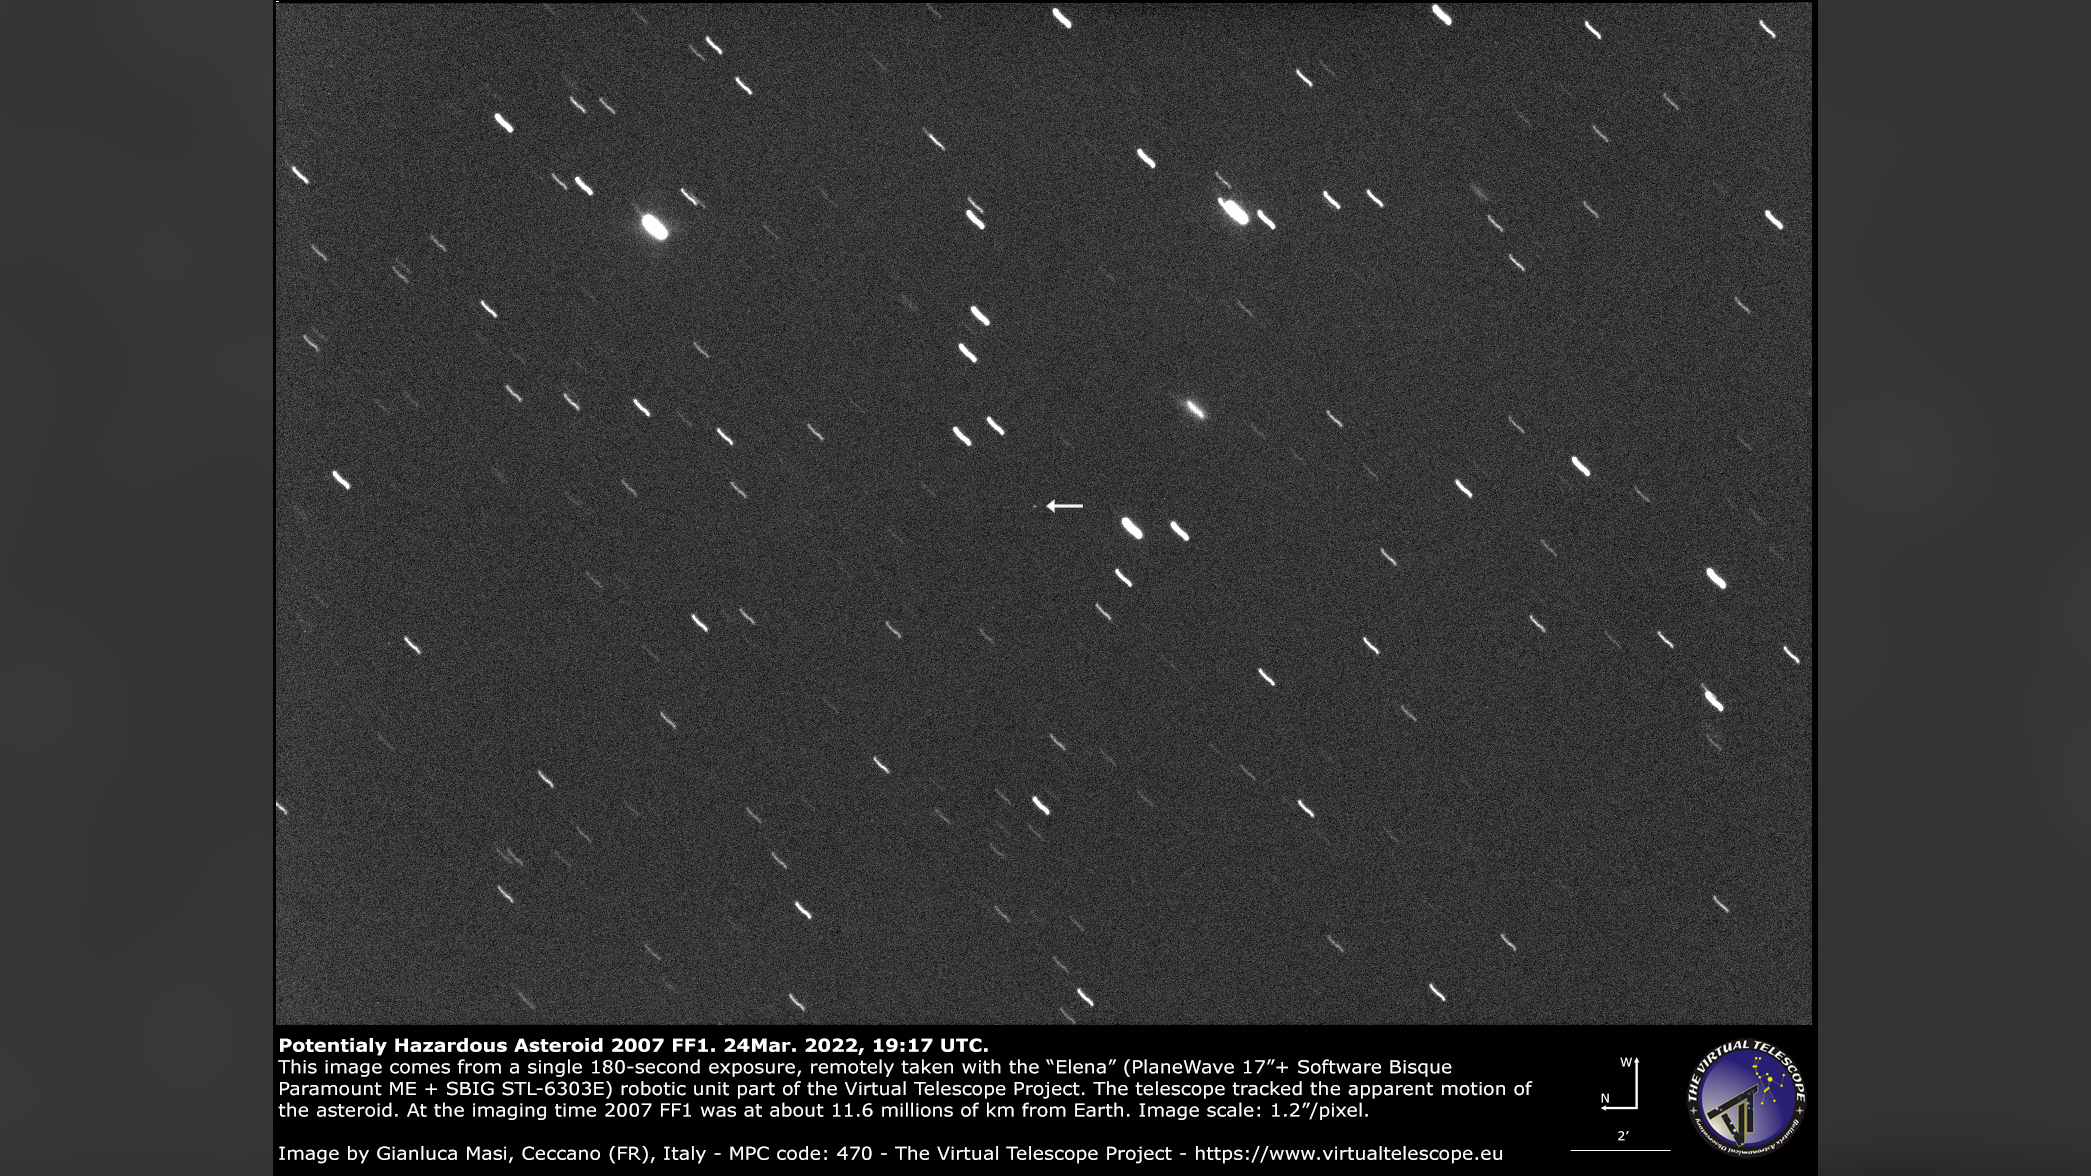 El Telescopio Virtual capturó esta imagen del asteroide potencialmente peligroso 2007 FF1 el 24 de marzo de 2022.